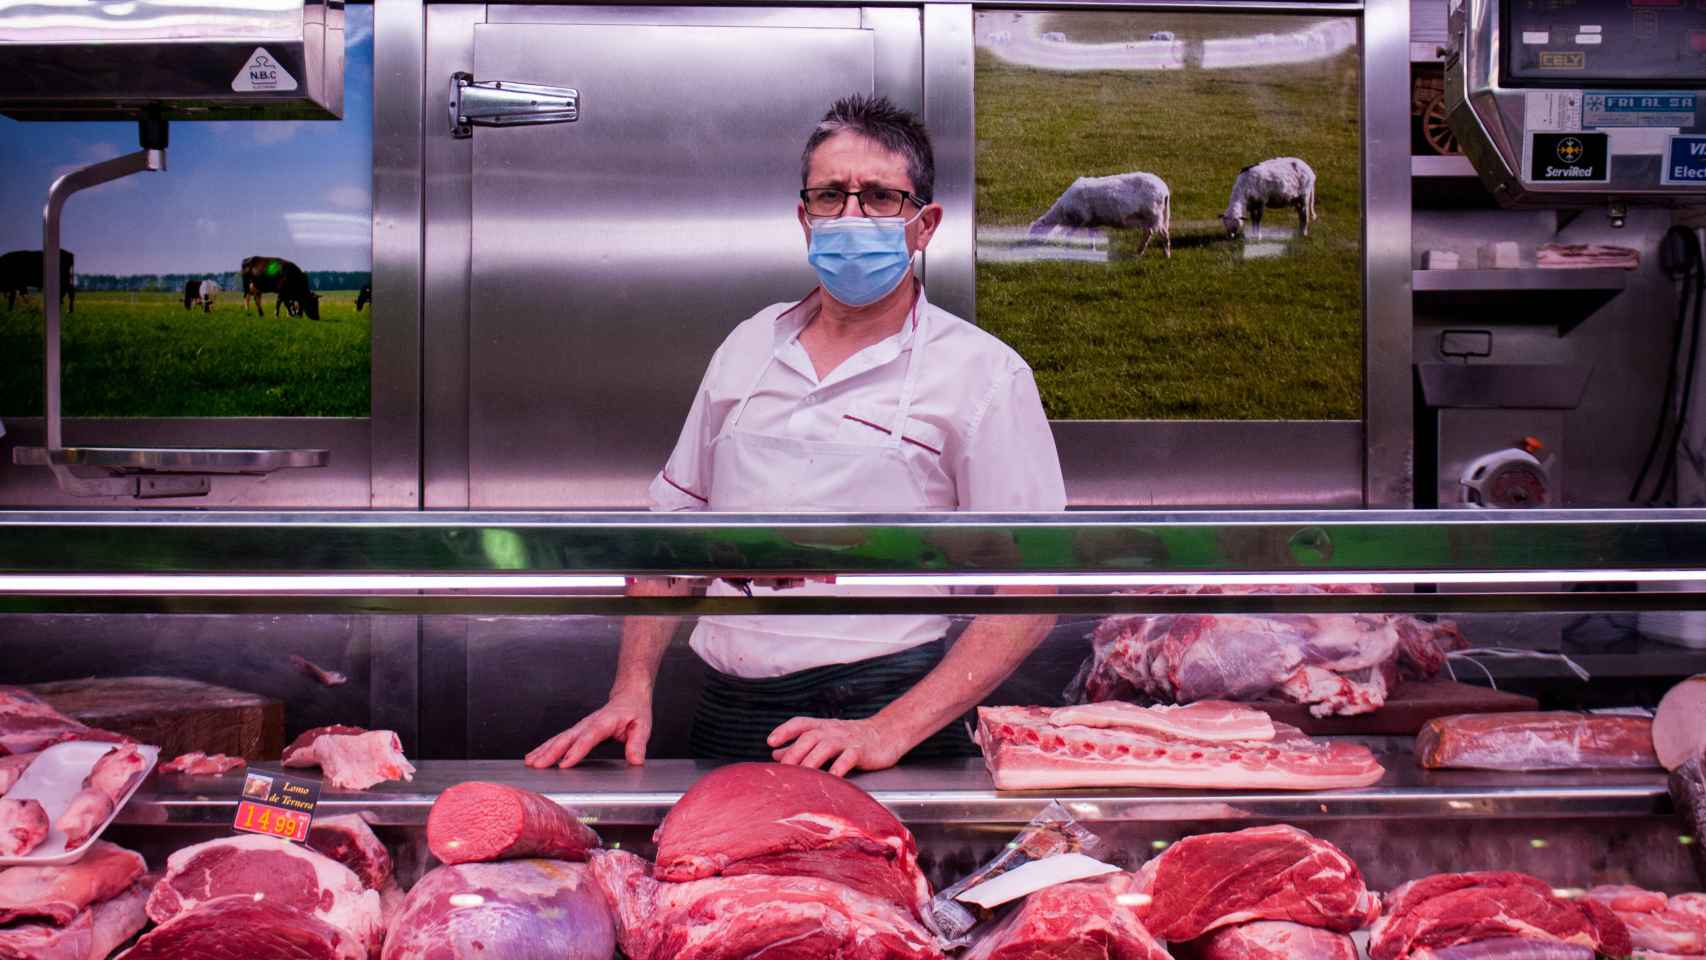 Manolo lleva 30 años vendiendo carne en este mercado.